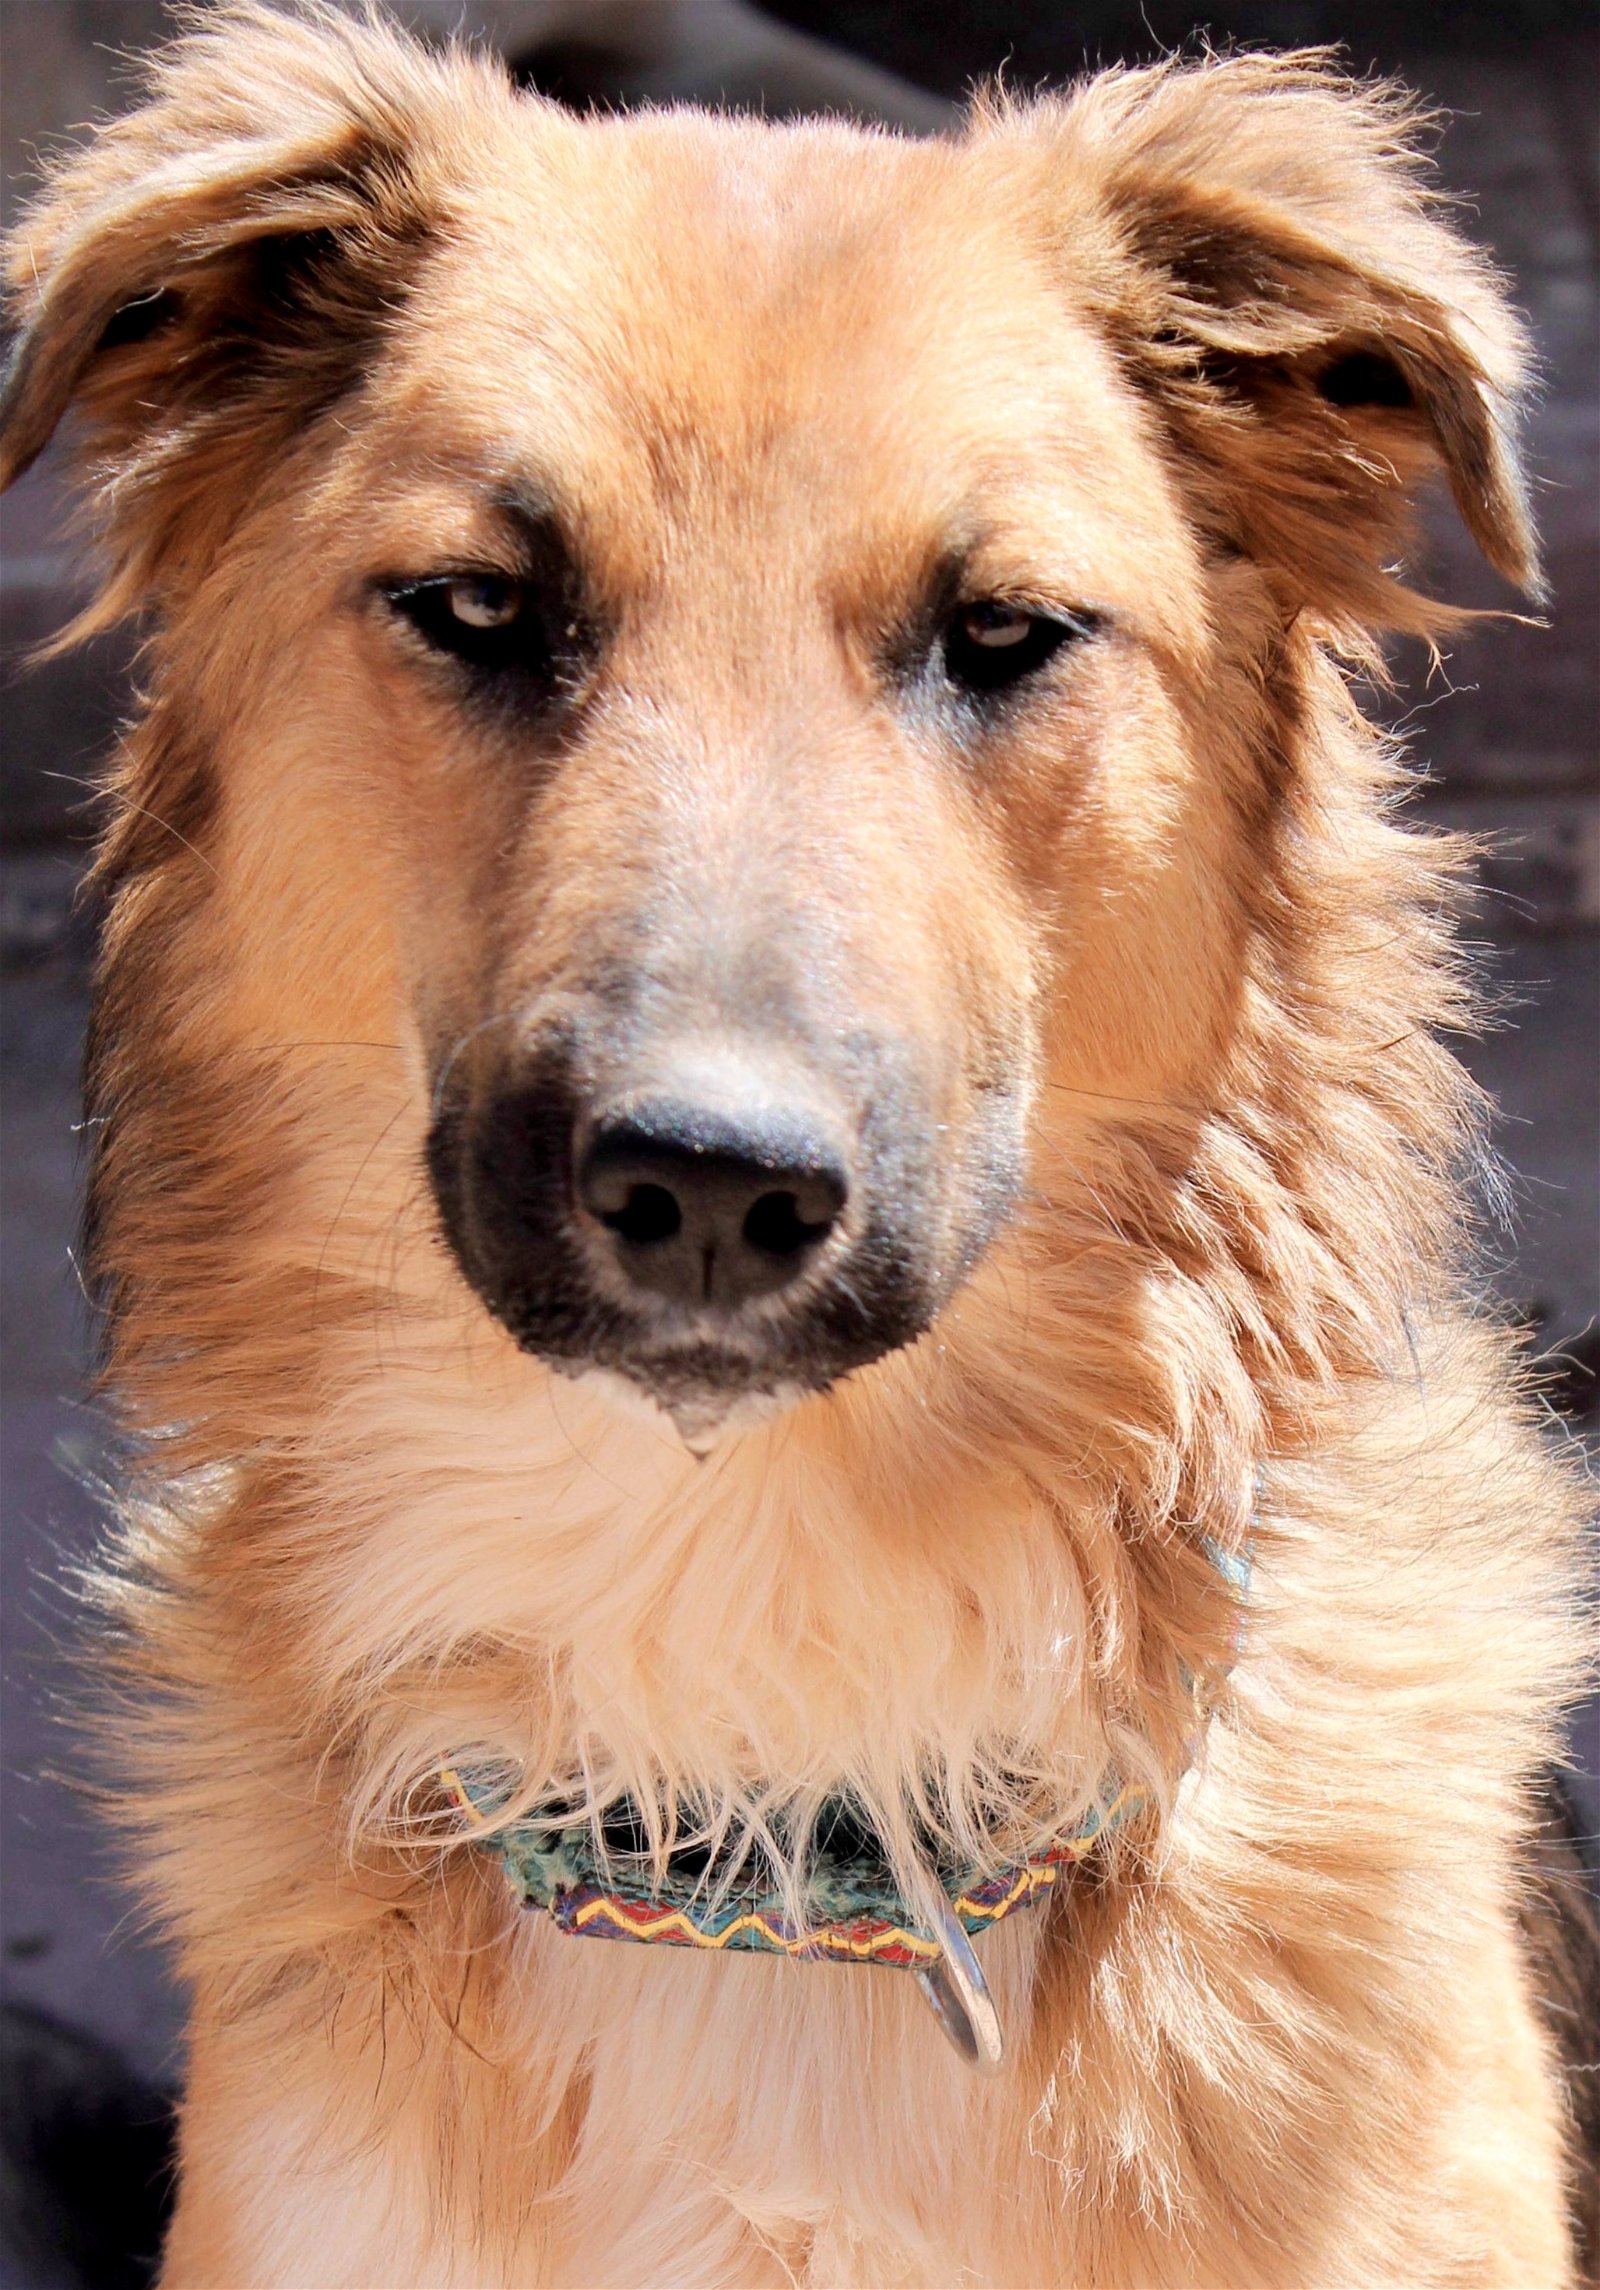 adoptable Dog in Alamogordo, NM named Merida